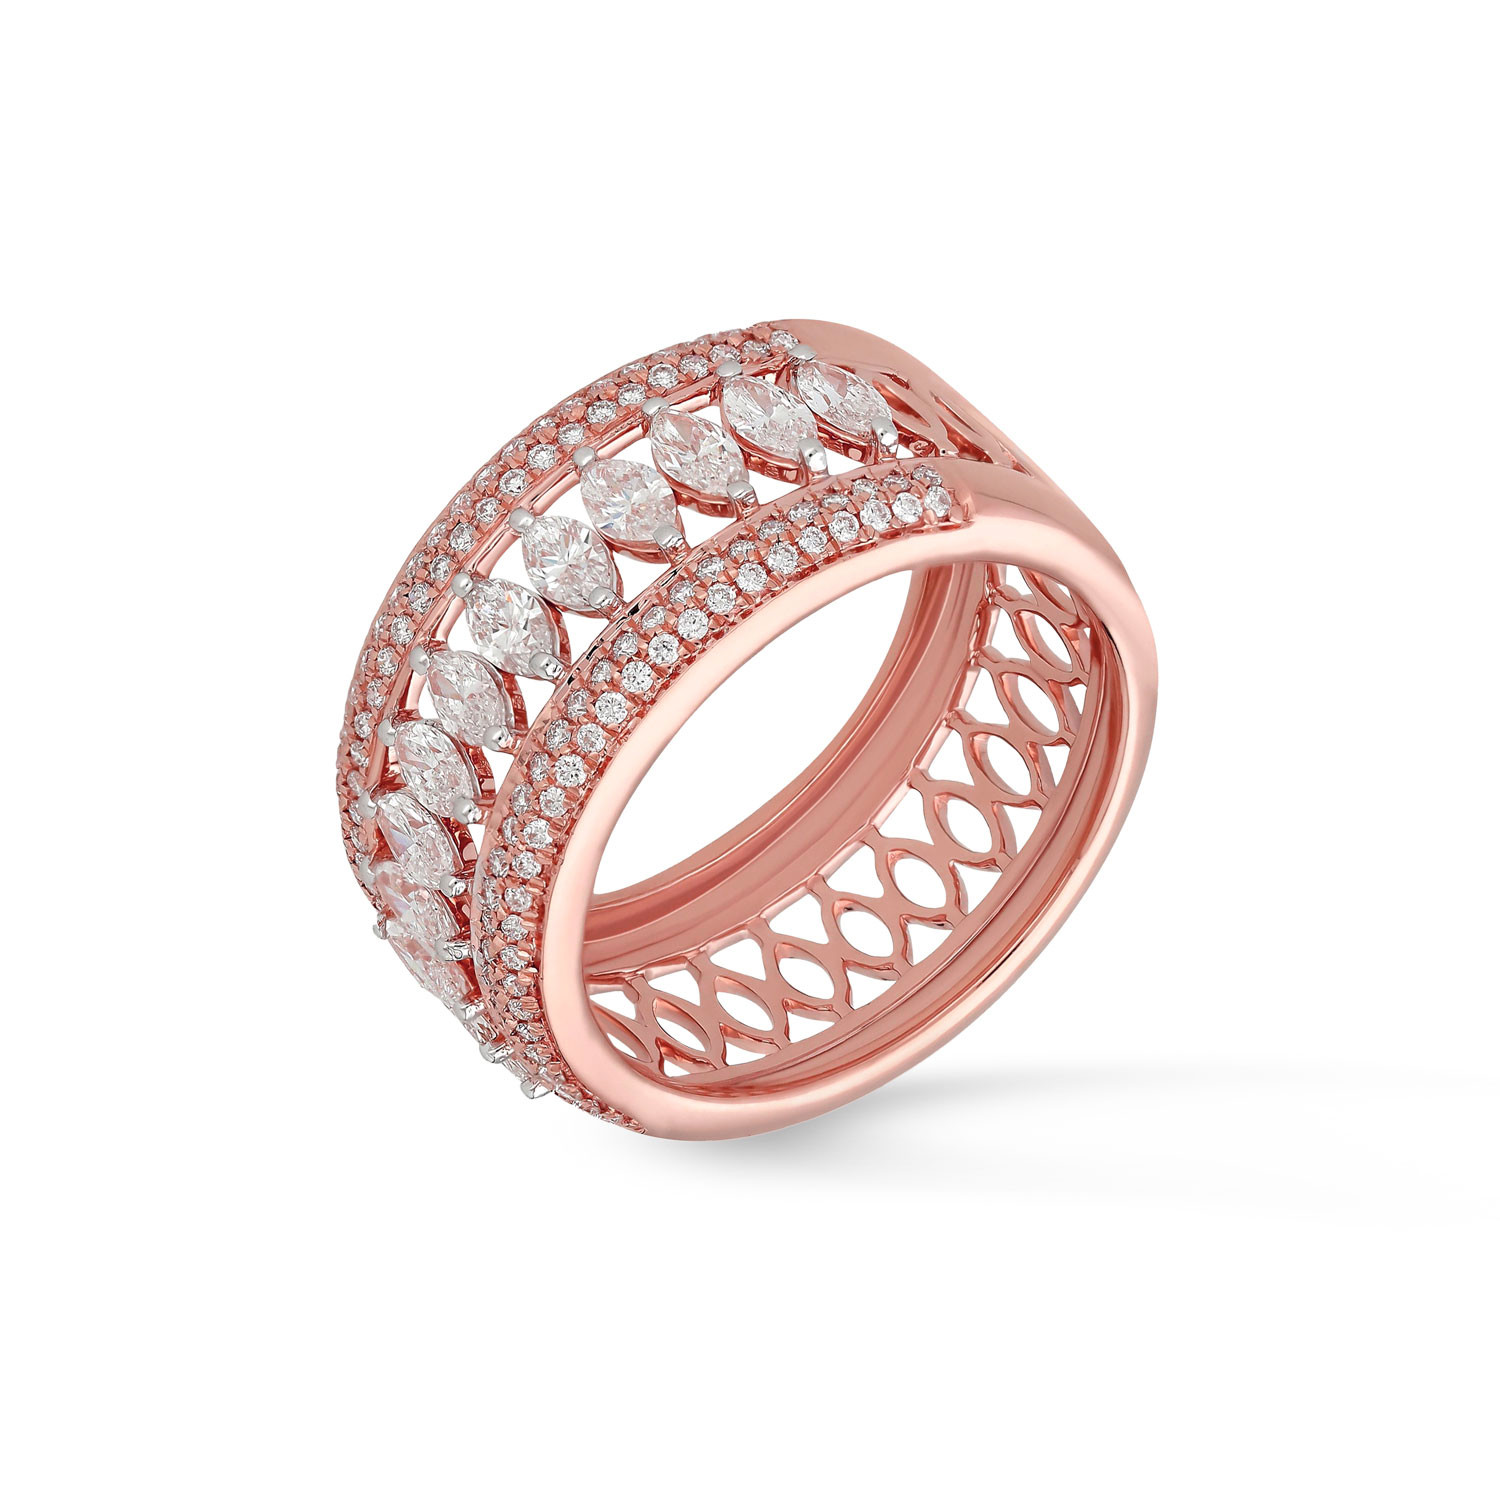 Buy quality 18kt / 750 rose gold two flower diamond ring 8lr251 in Pune